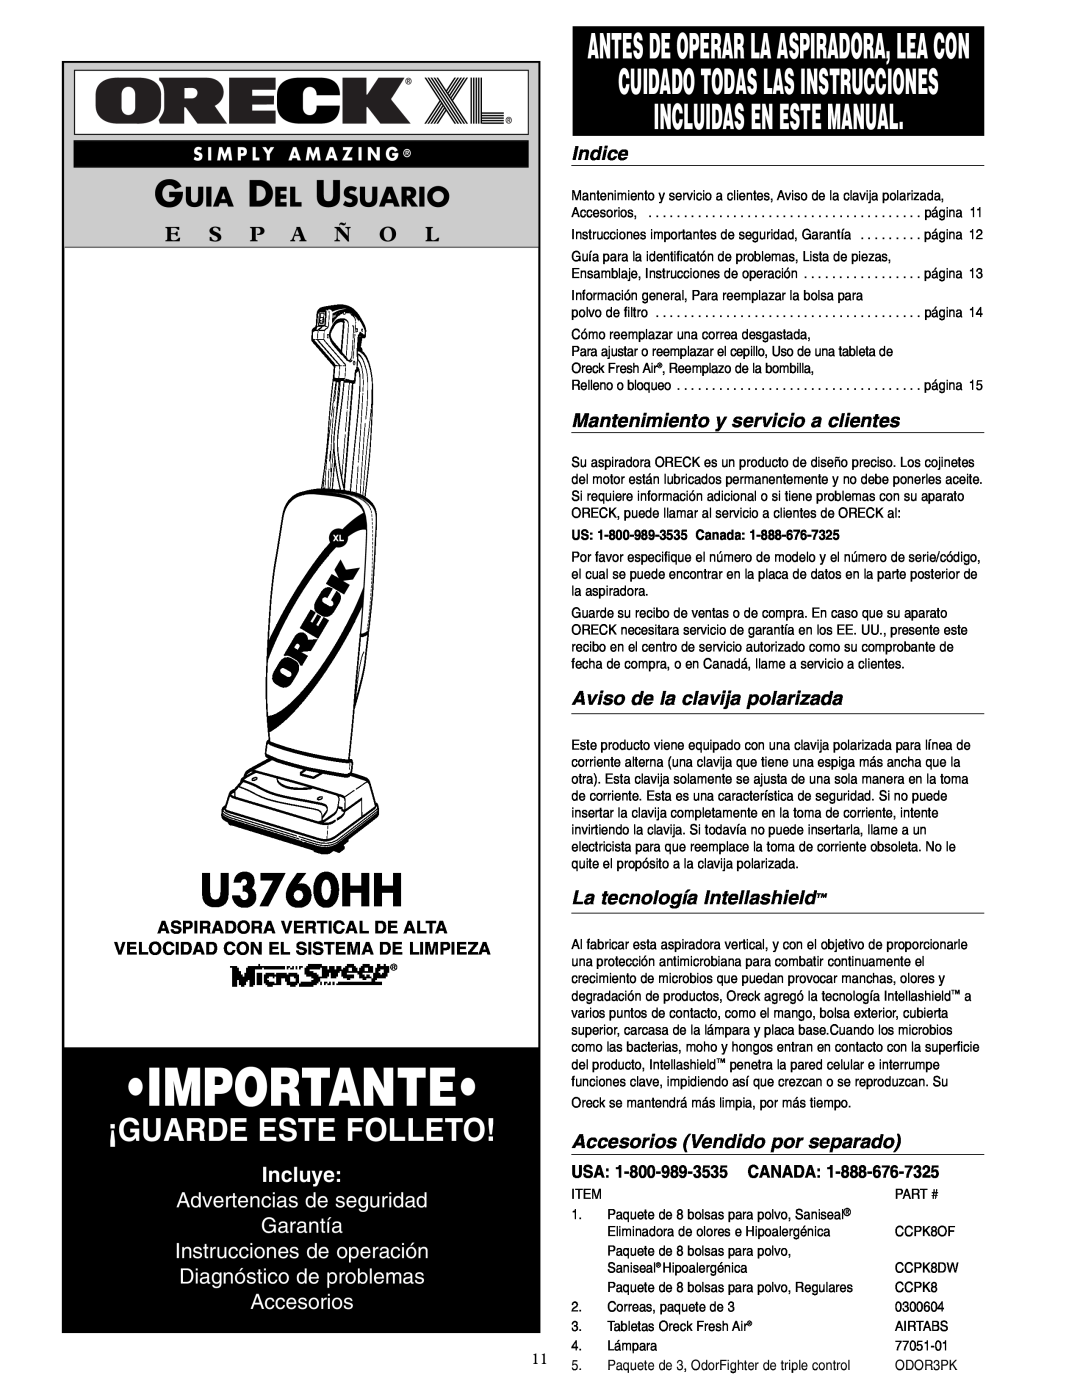 Oreck U3760HH Importante, ¡Guarde Este Folleto, Incluidas En Este Manual, Guia Del Usuario, E S P A Ñ O L, Incluye, Indice 